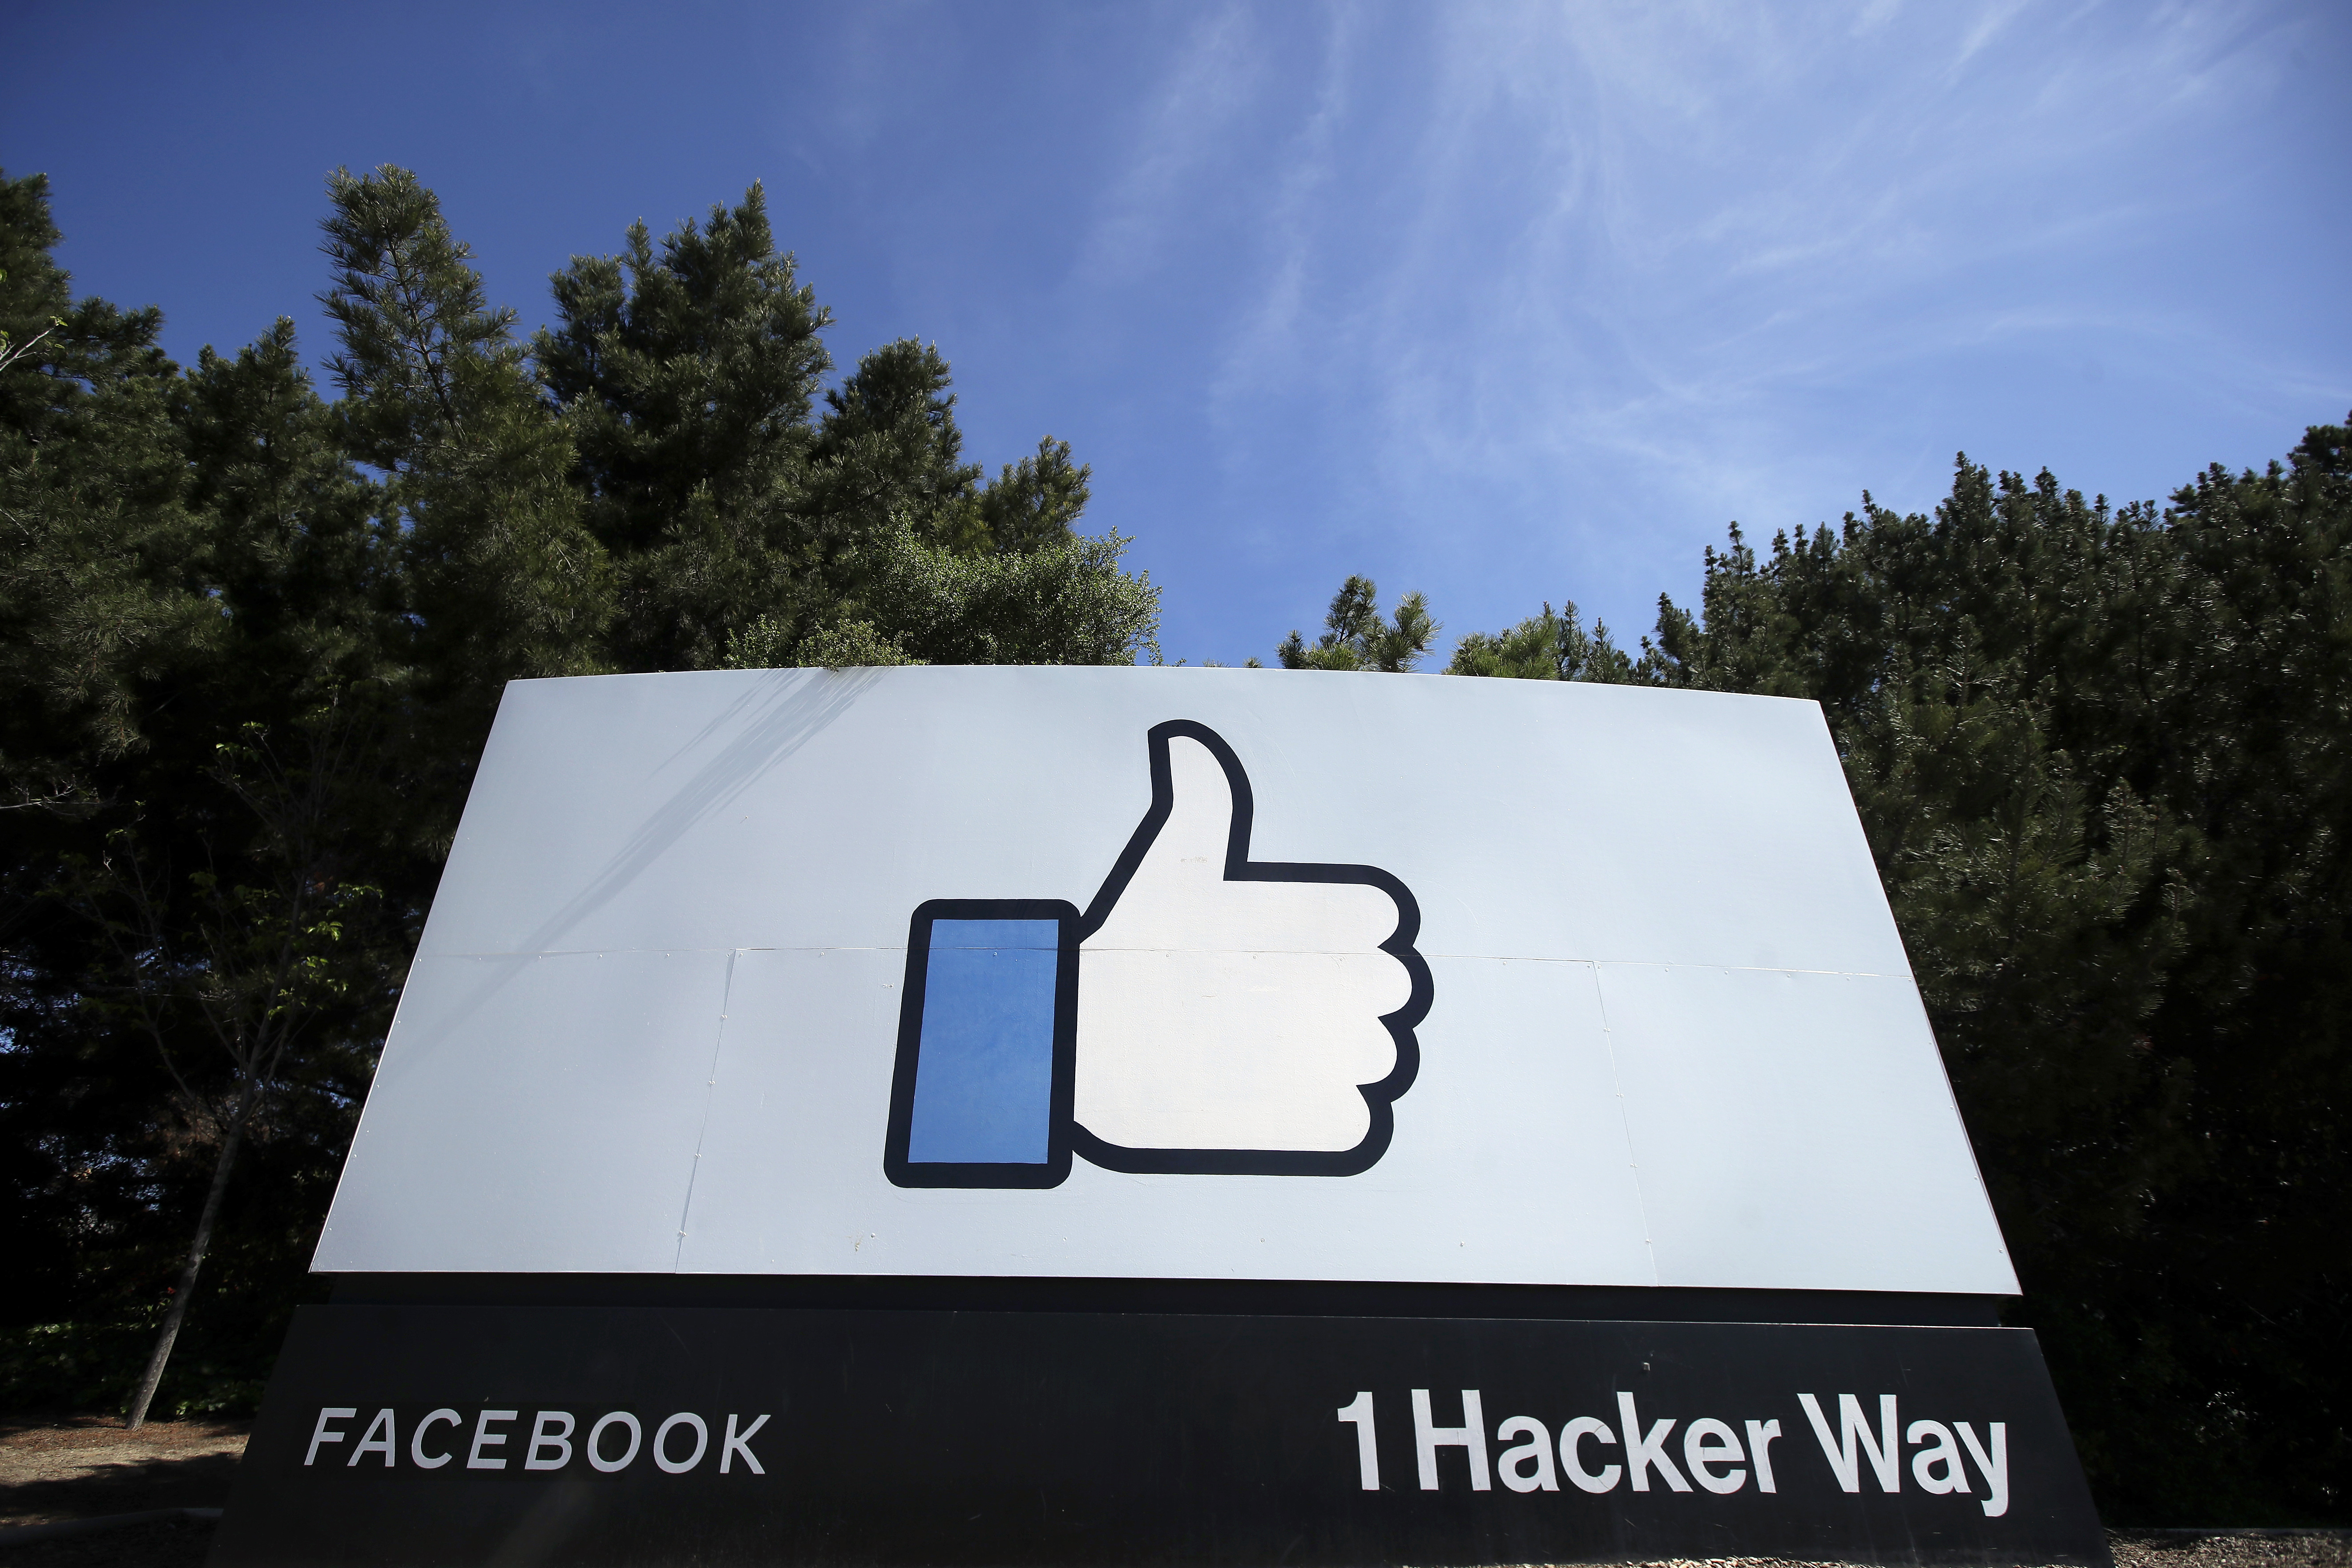 Facebook Metaverse: Zuckerberg plans for social media to go sci-fi